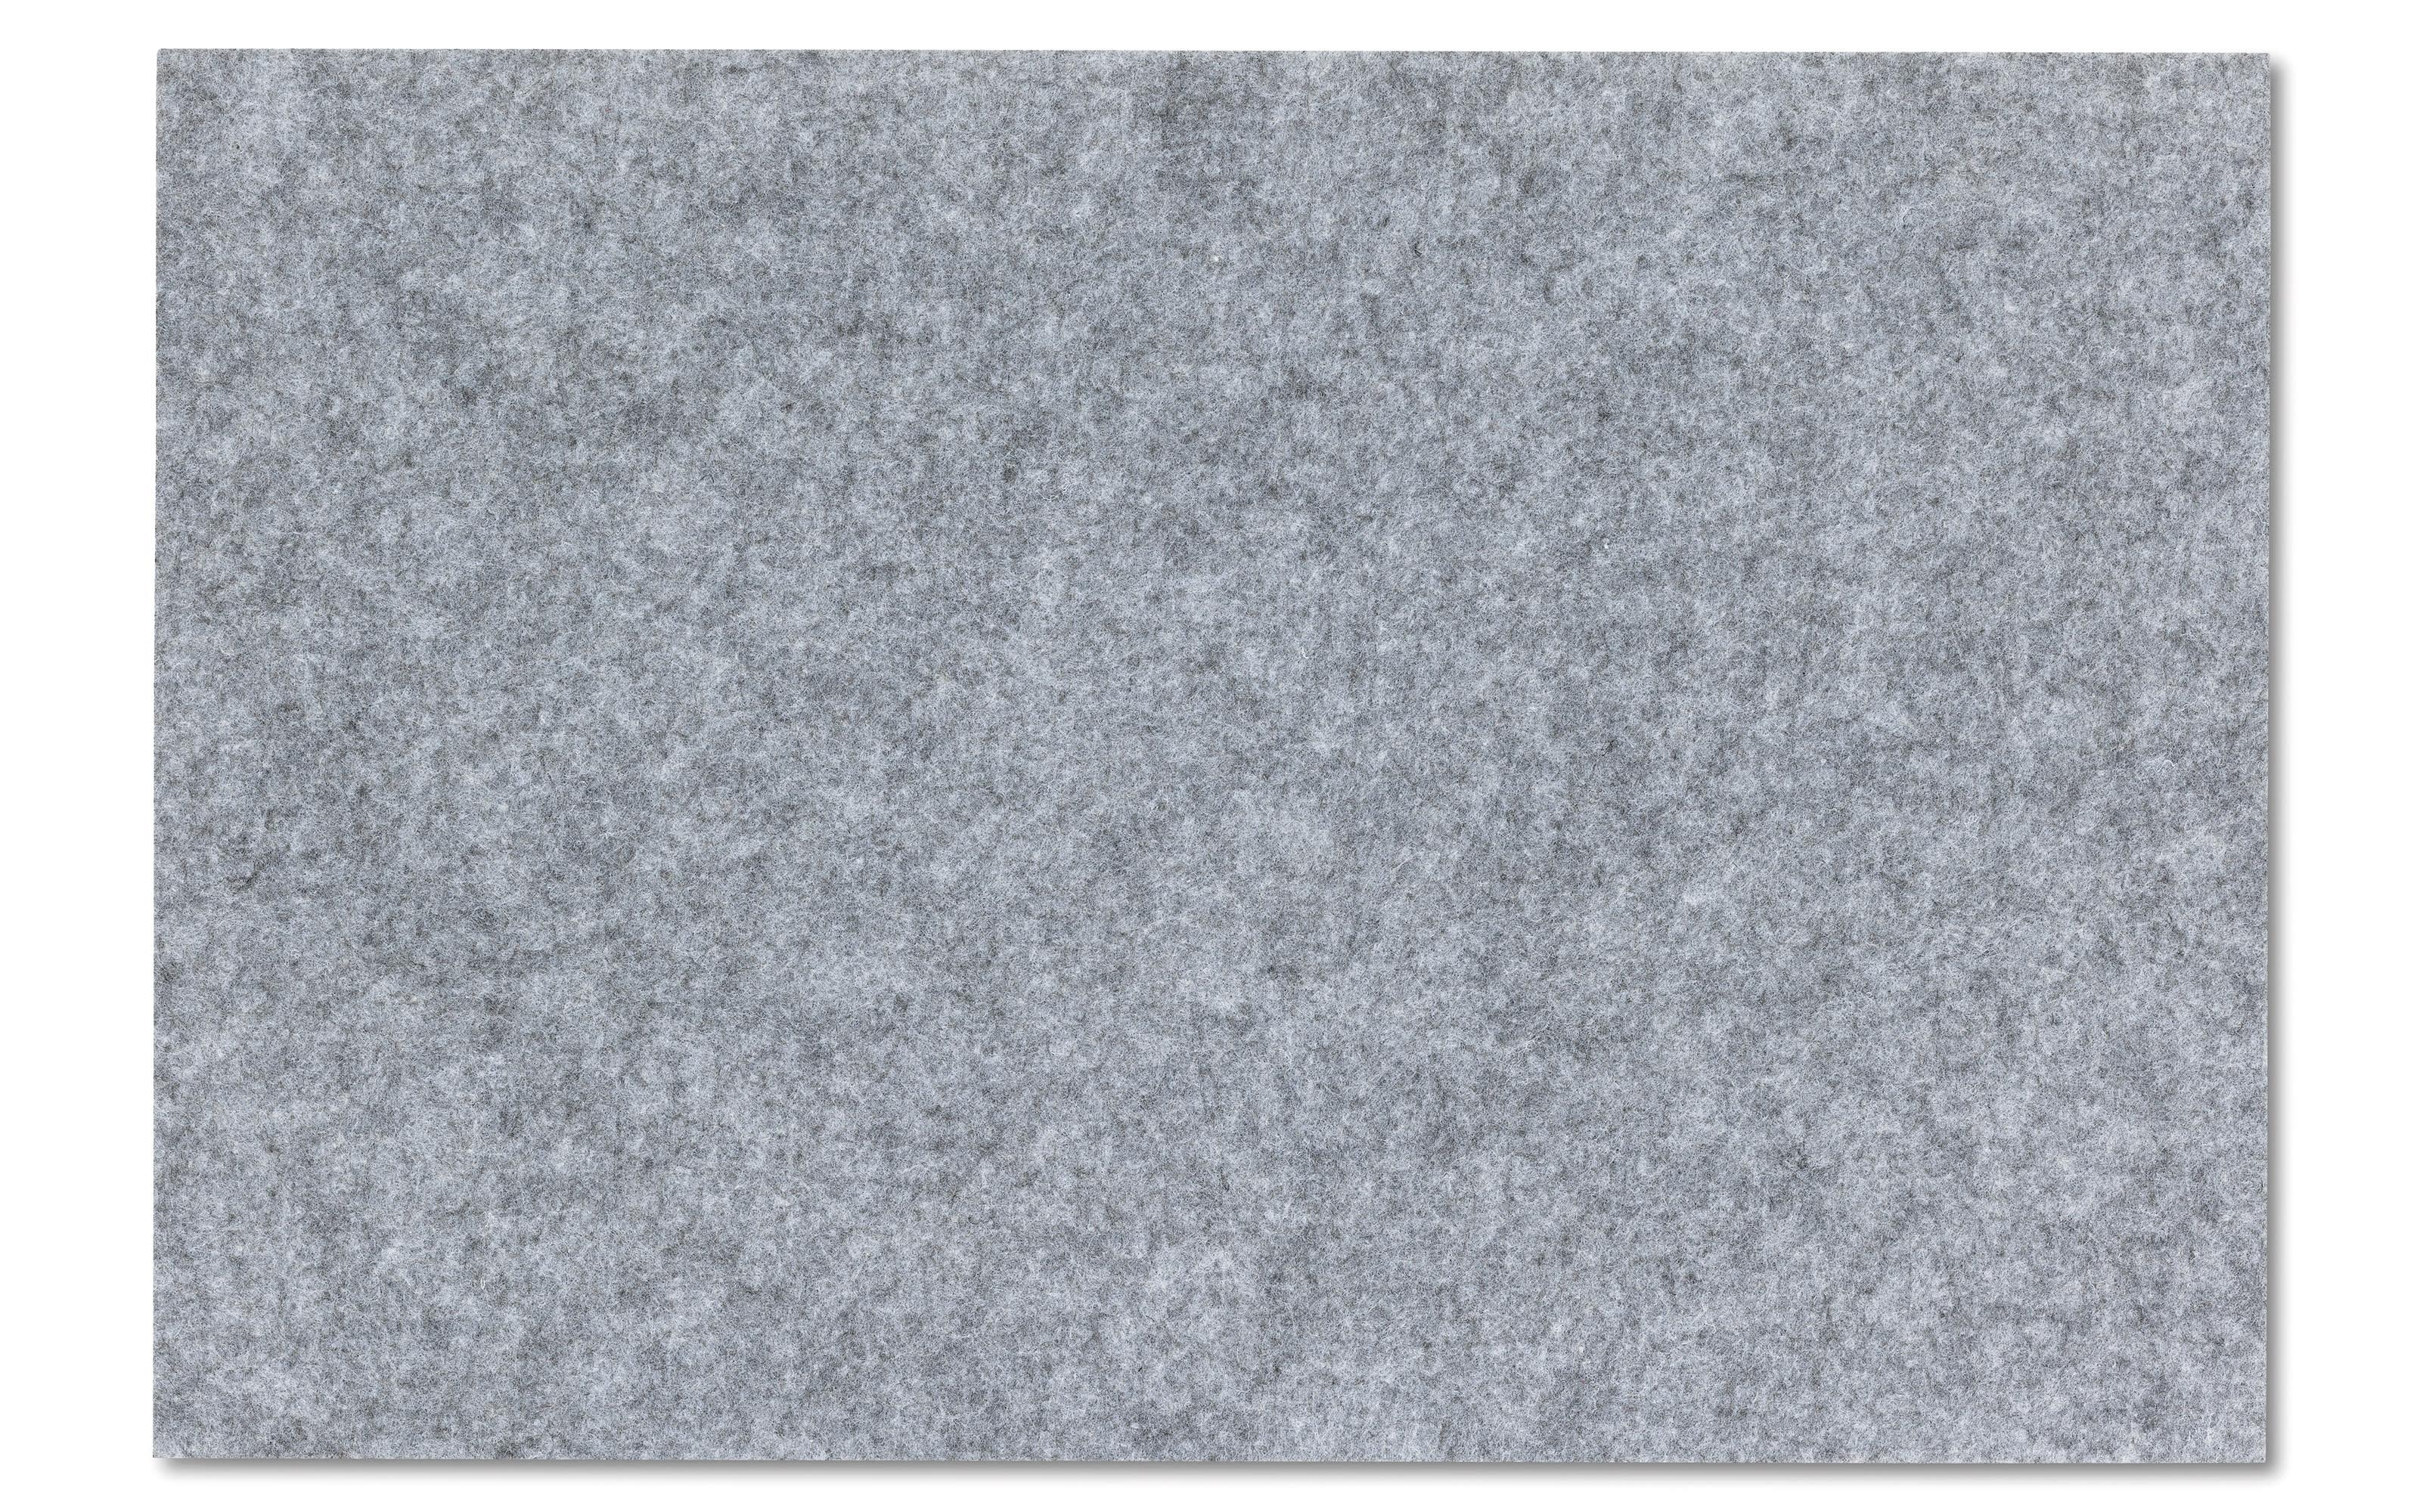 Tischset Alia in grau, 30 x 45 cm